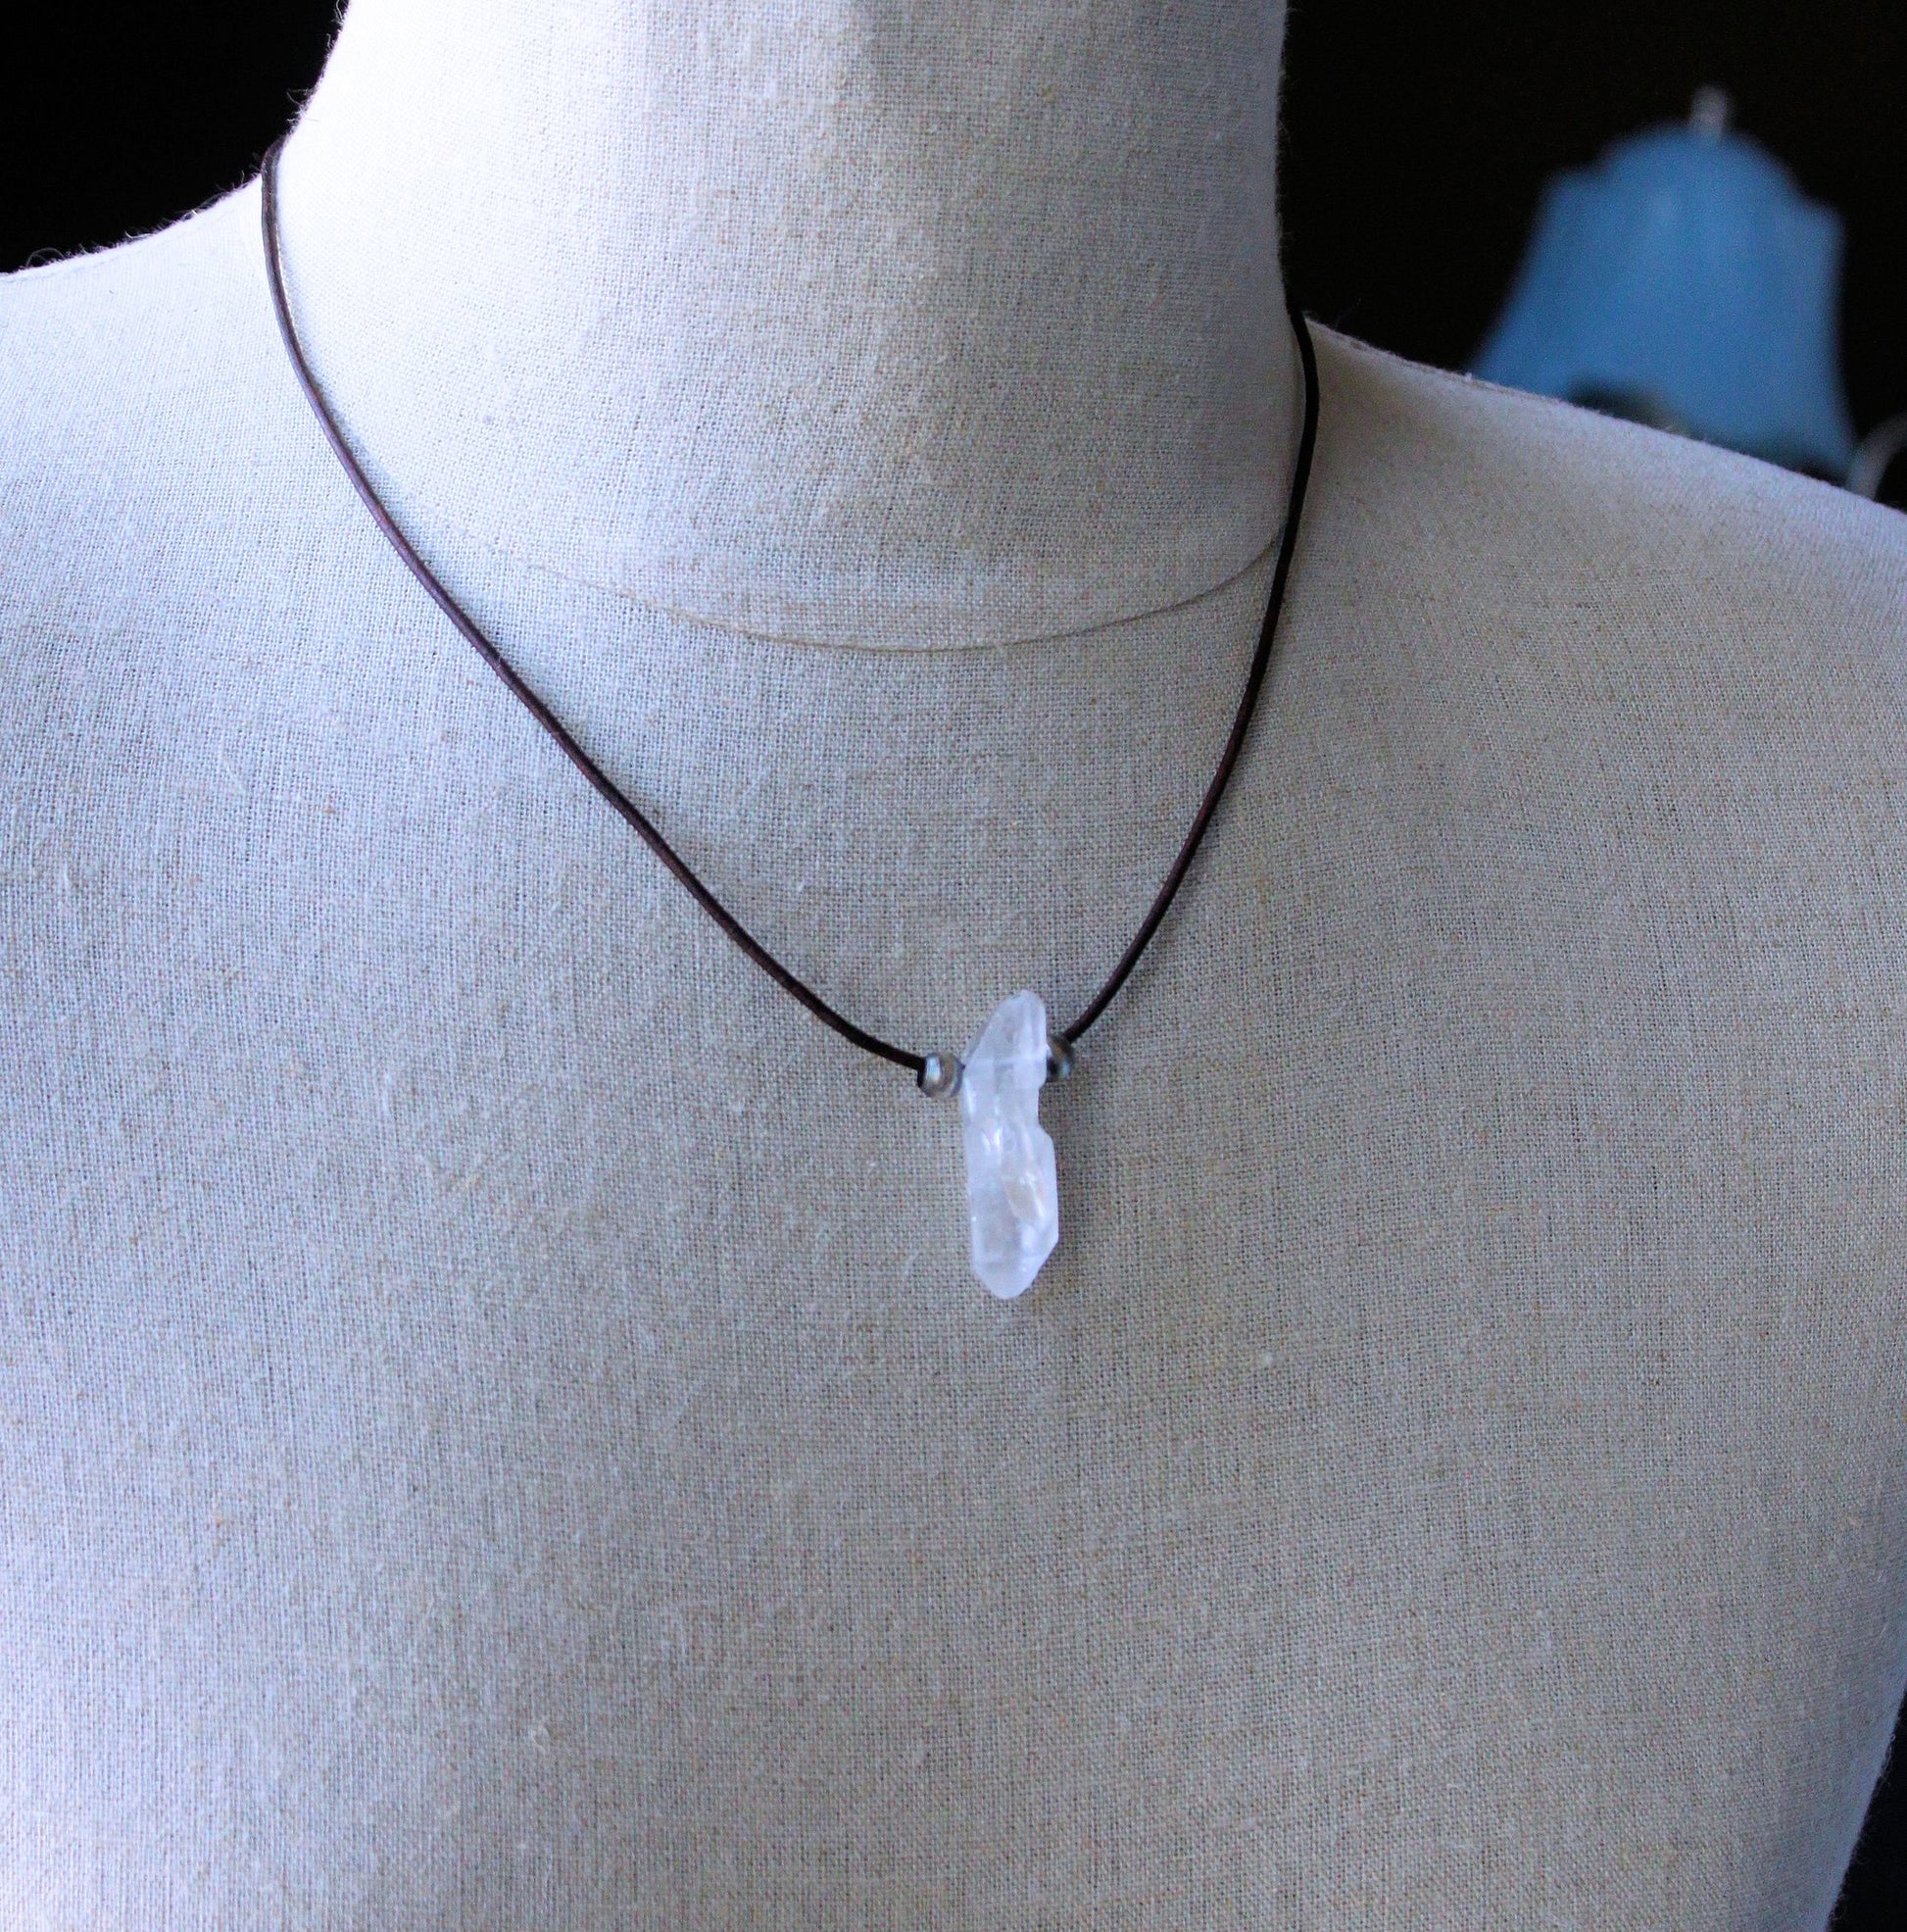 Men's clear crystal quartz necklace